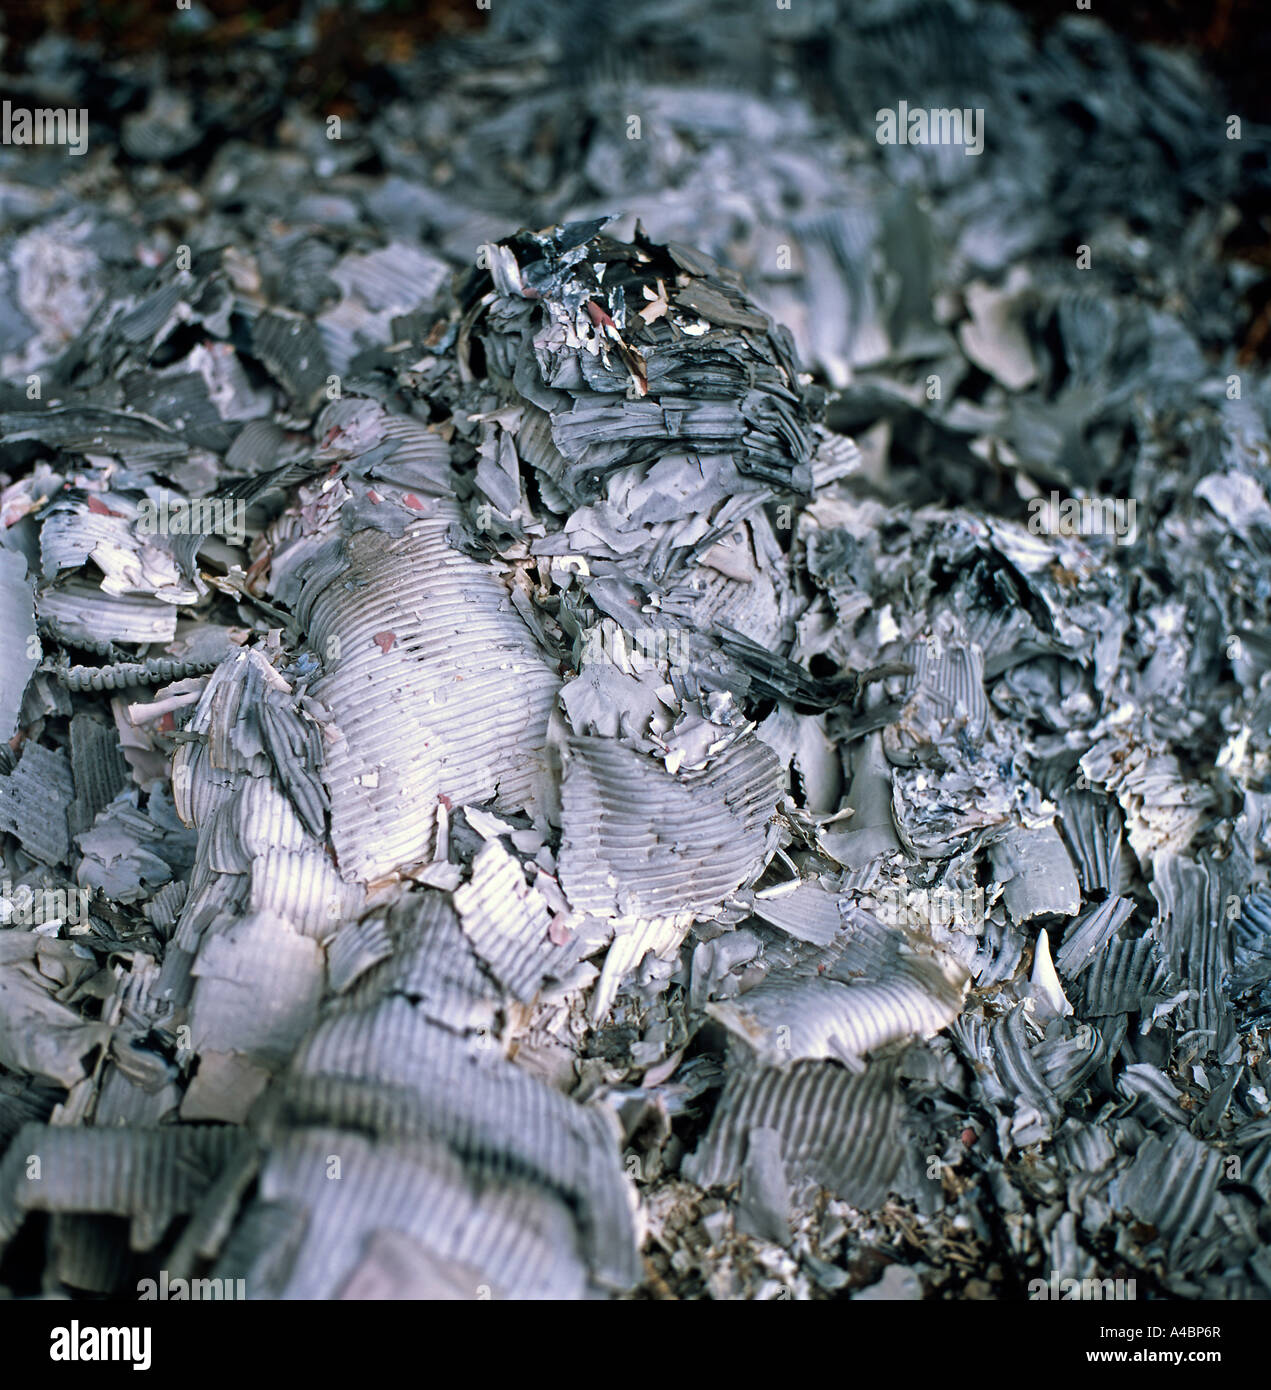 Une pile de cendres gris argenté laissées par des boîtes en carton en feu au pays de Galles Kathy DEWITT, Royaume-Uni Banque D'Images